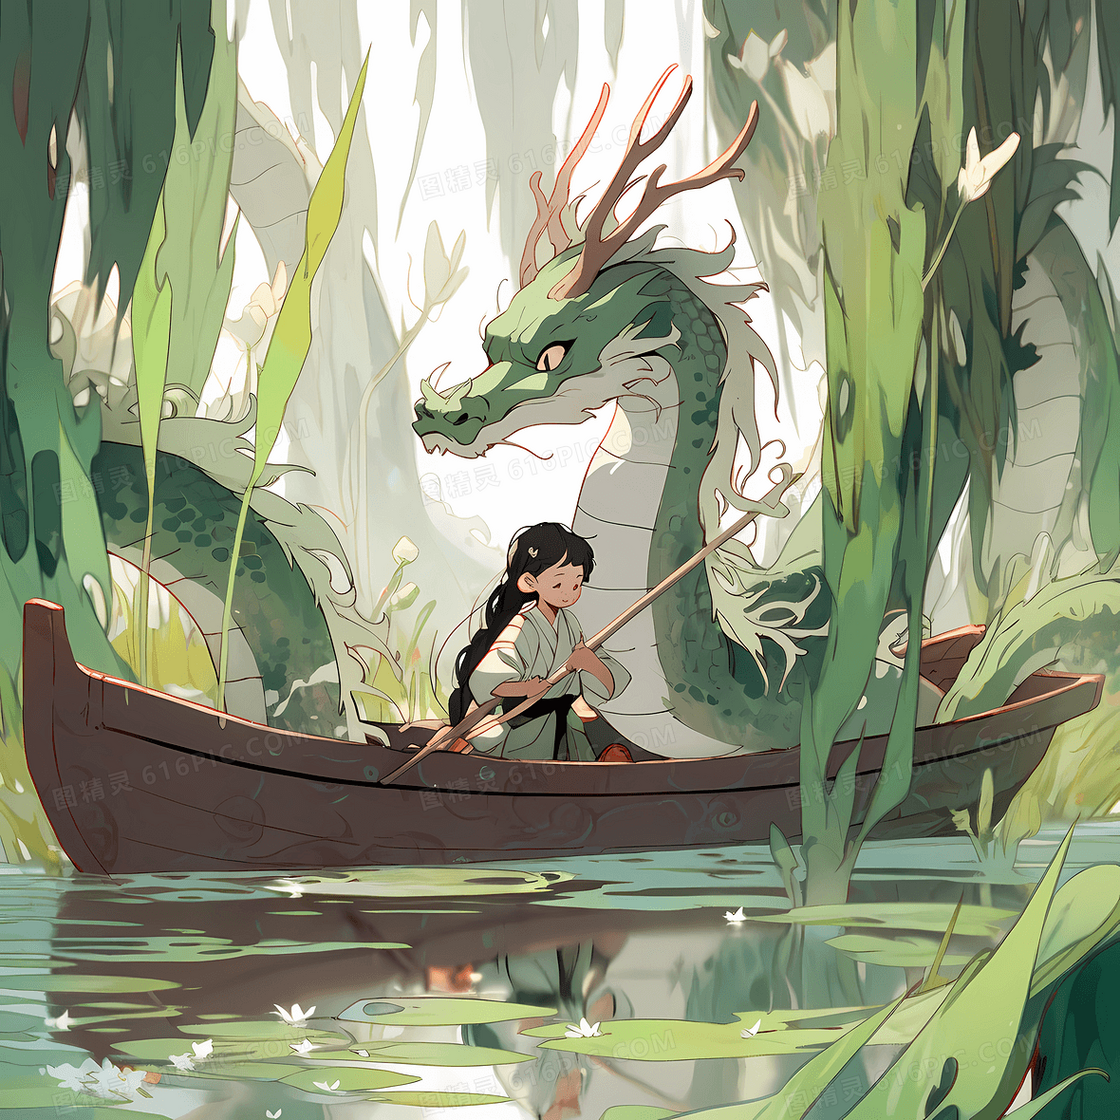 可爱的小女孩和一条巨龙开心的划船游湖创意插图